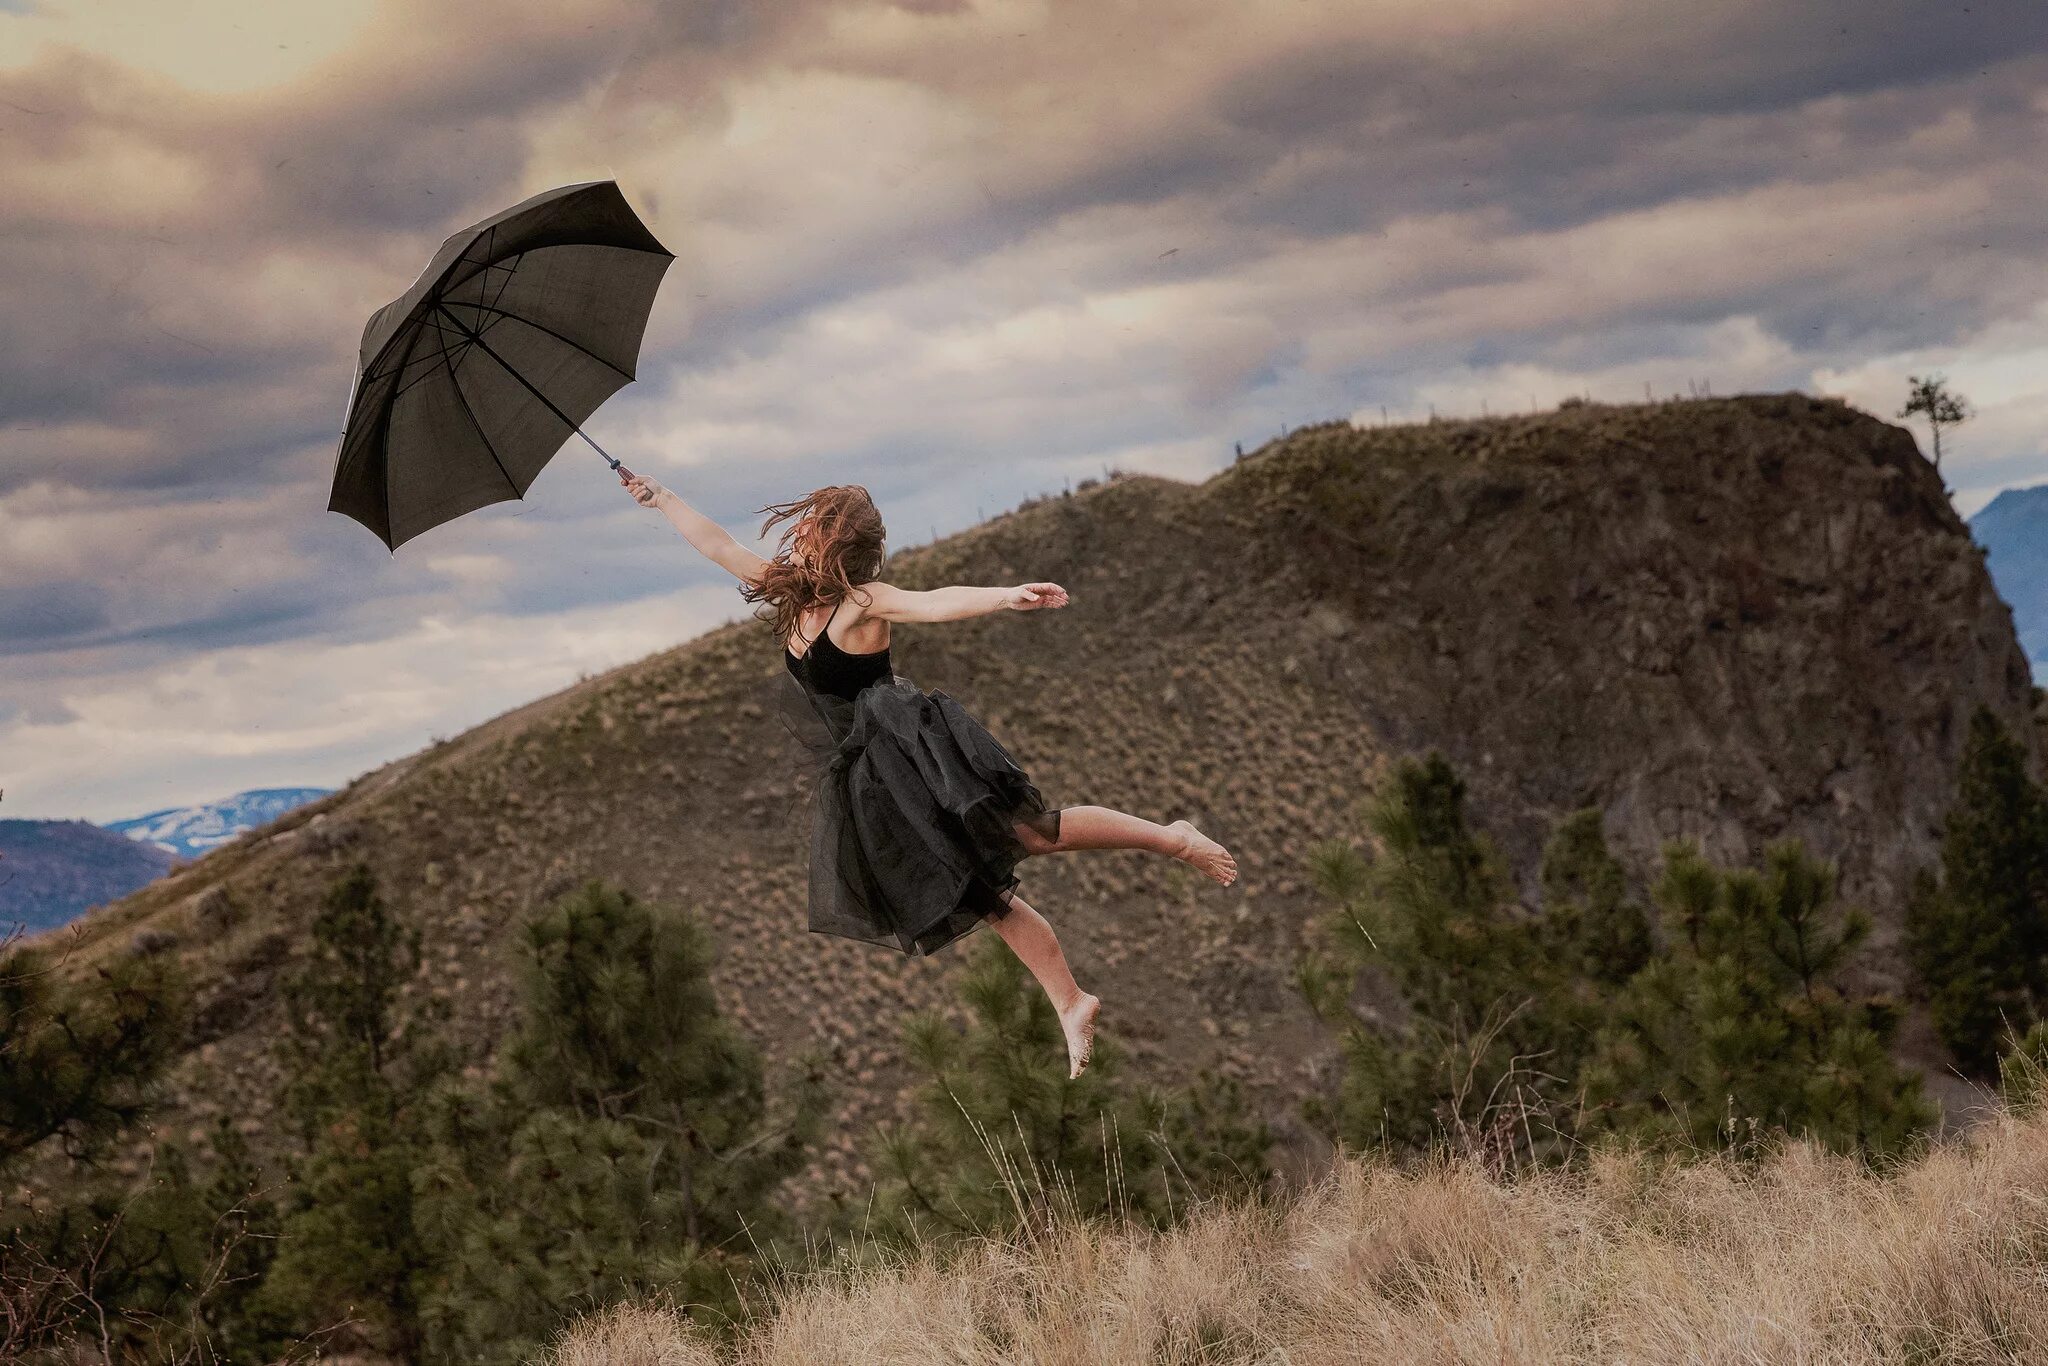 Девушка летает. Девушка с зонтиком в полете. Девушка летит на зонтике. Летающий зонтик. Навстречу ветру песня росс